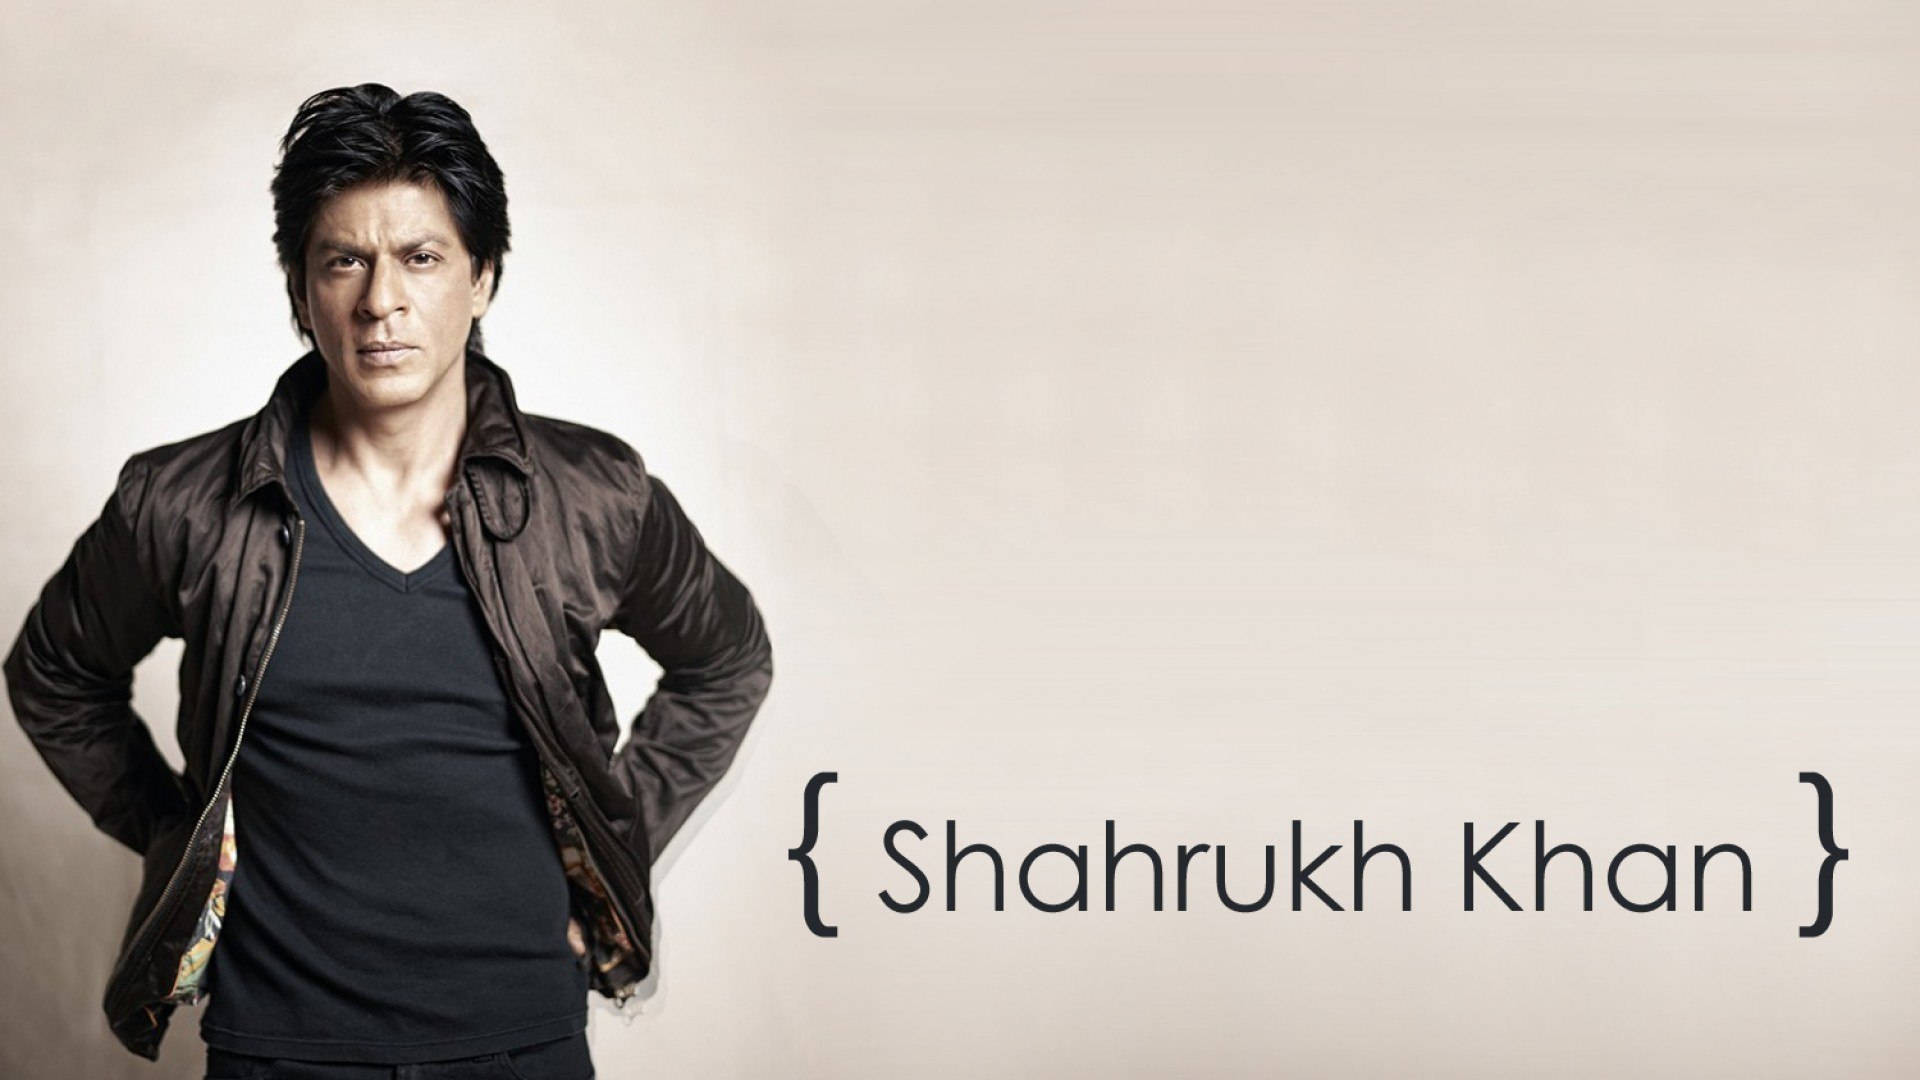 Shahrukh Khan Braune Jacke Wallpaper